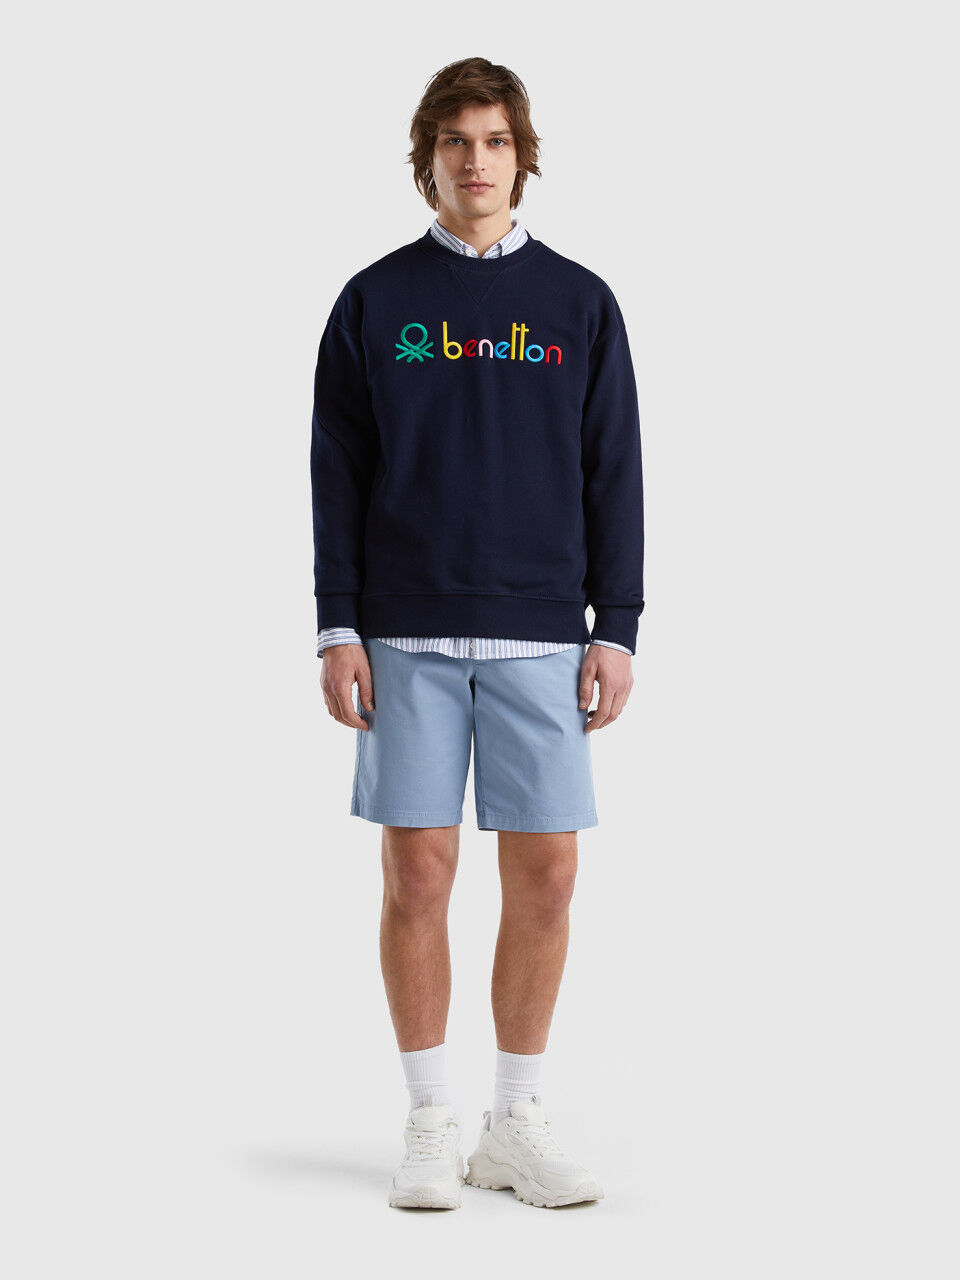 Logoed 100% cotton sweatshirt